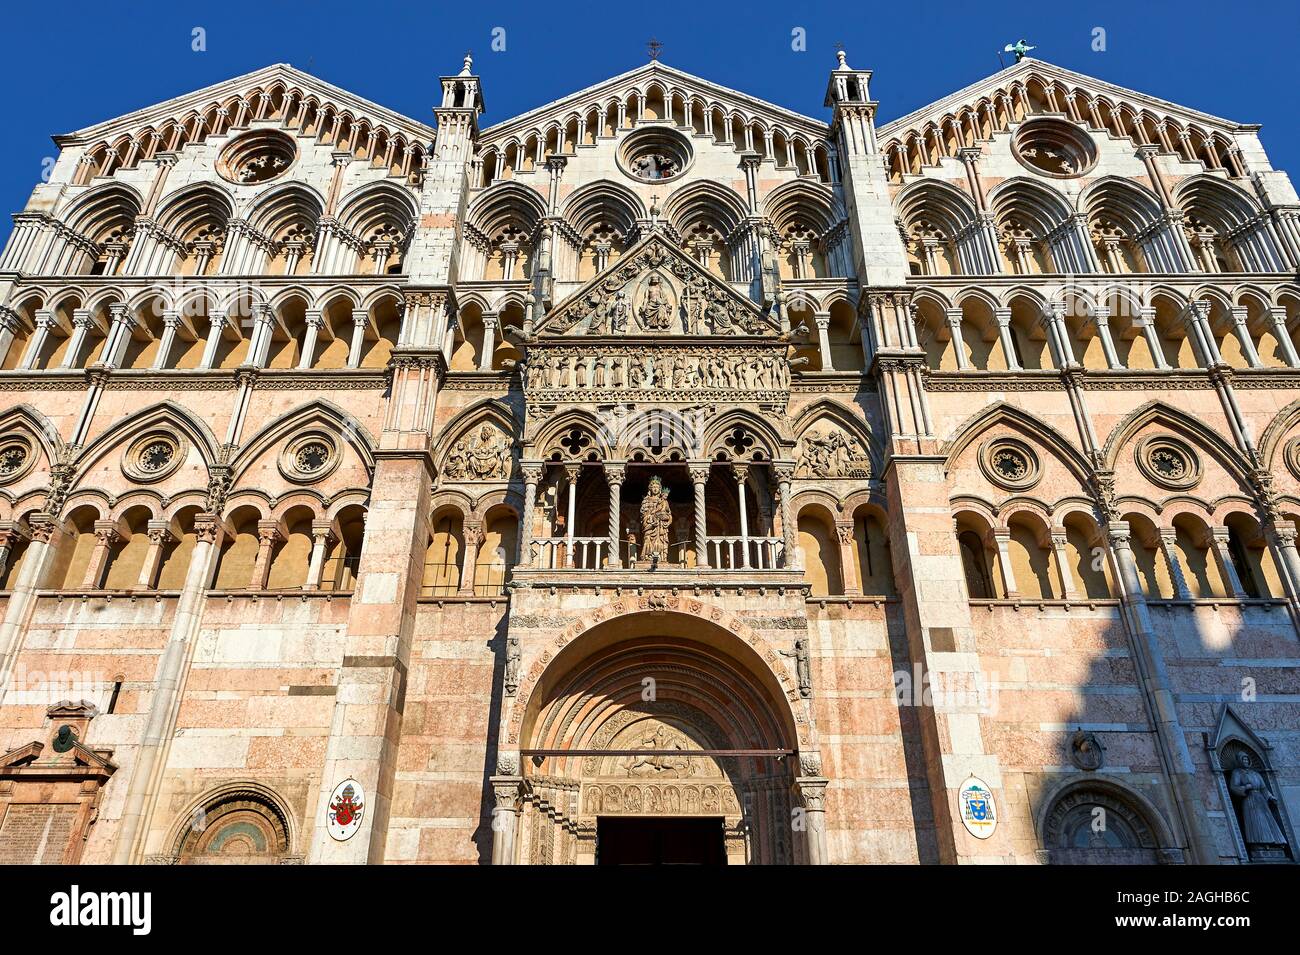 Facade of the 12th century Romanesque Ferrara Duomo, Italy Stock Photo